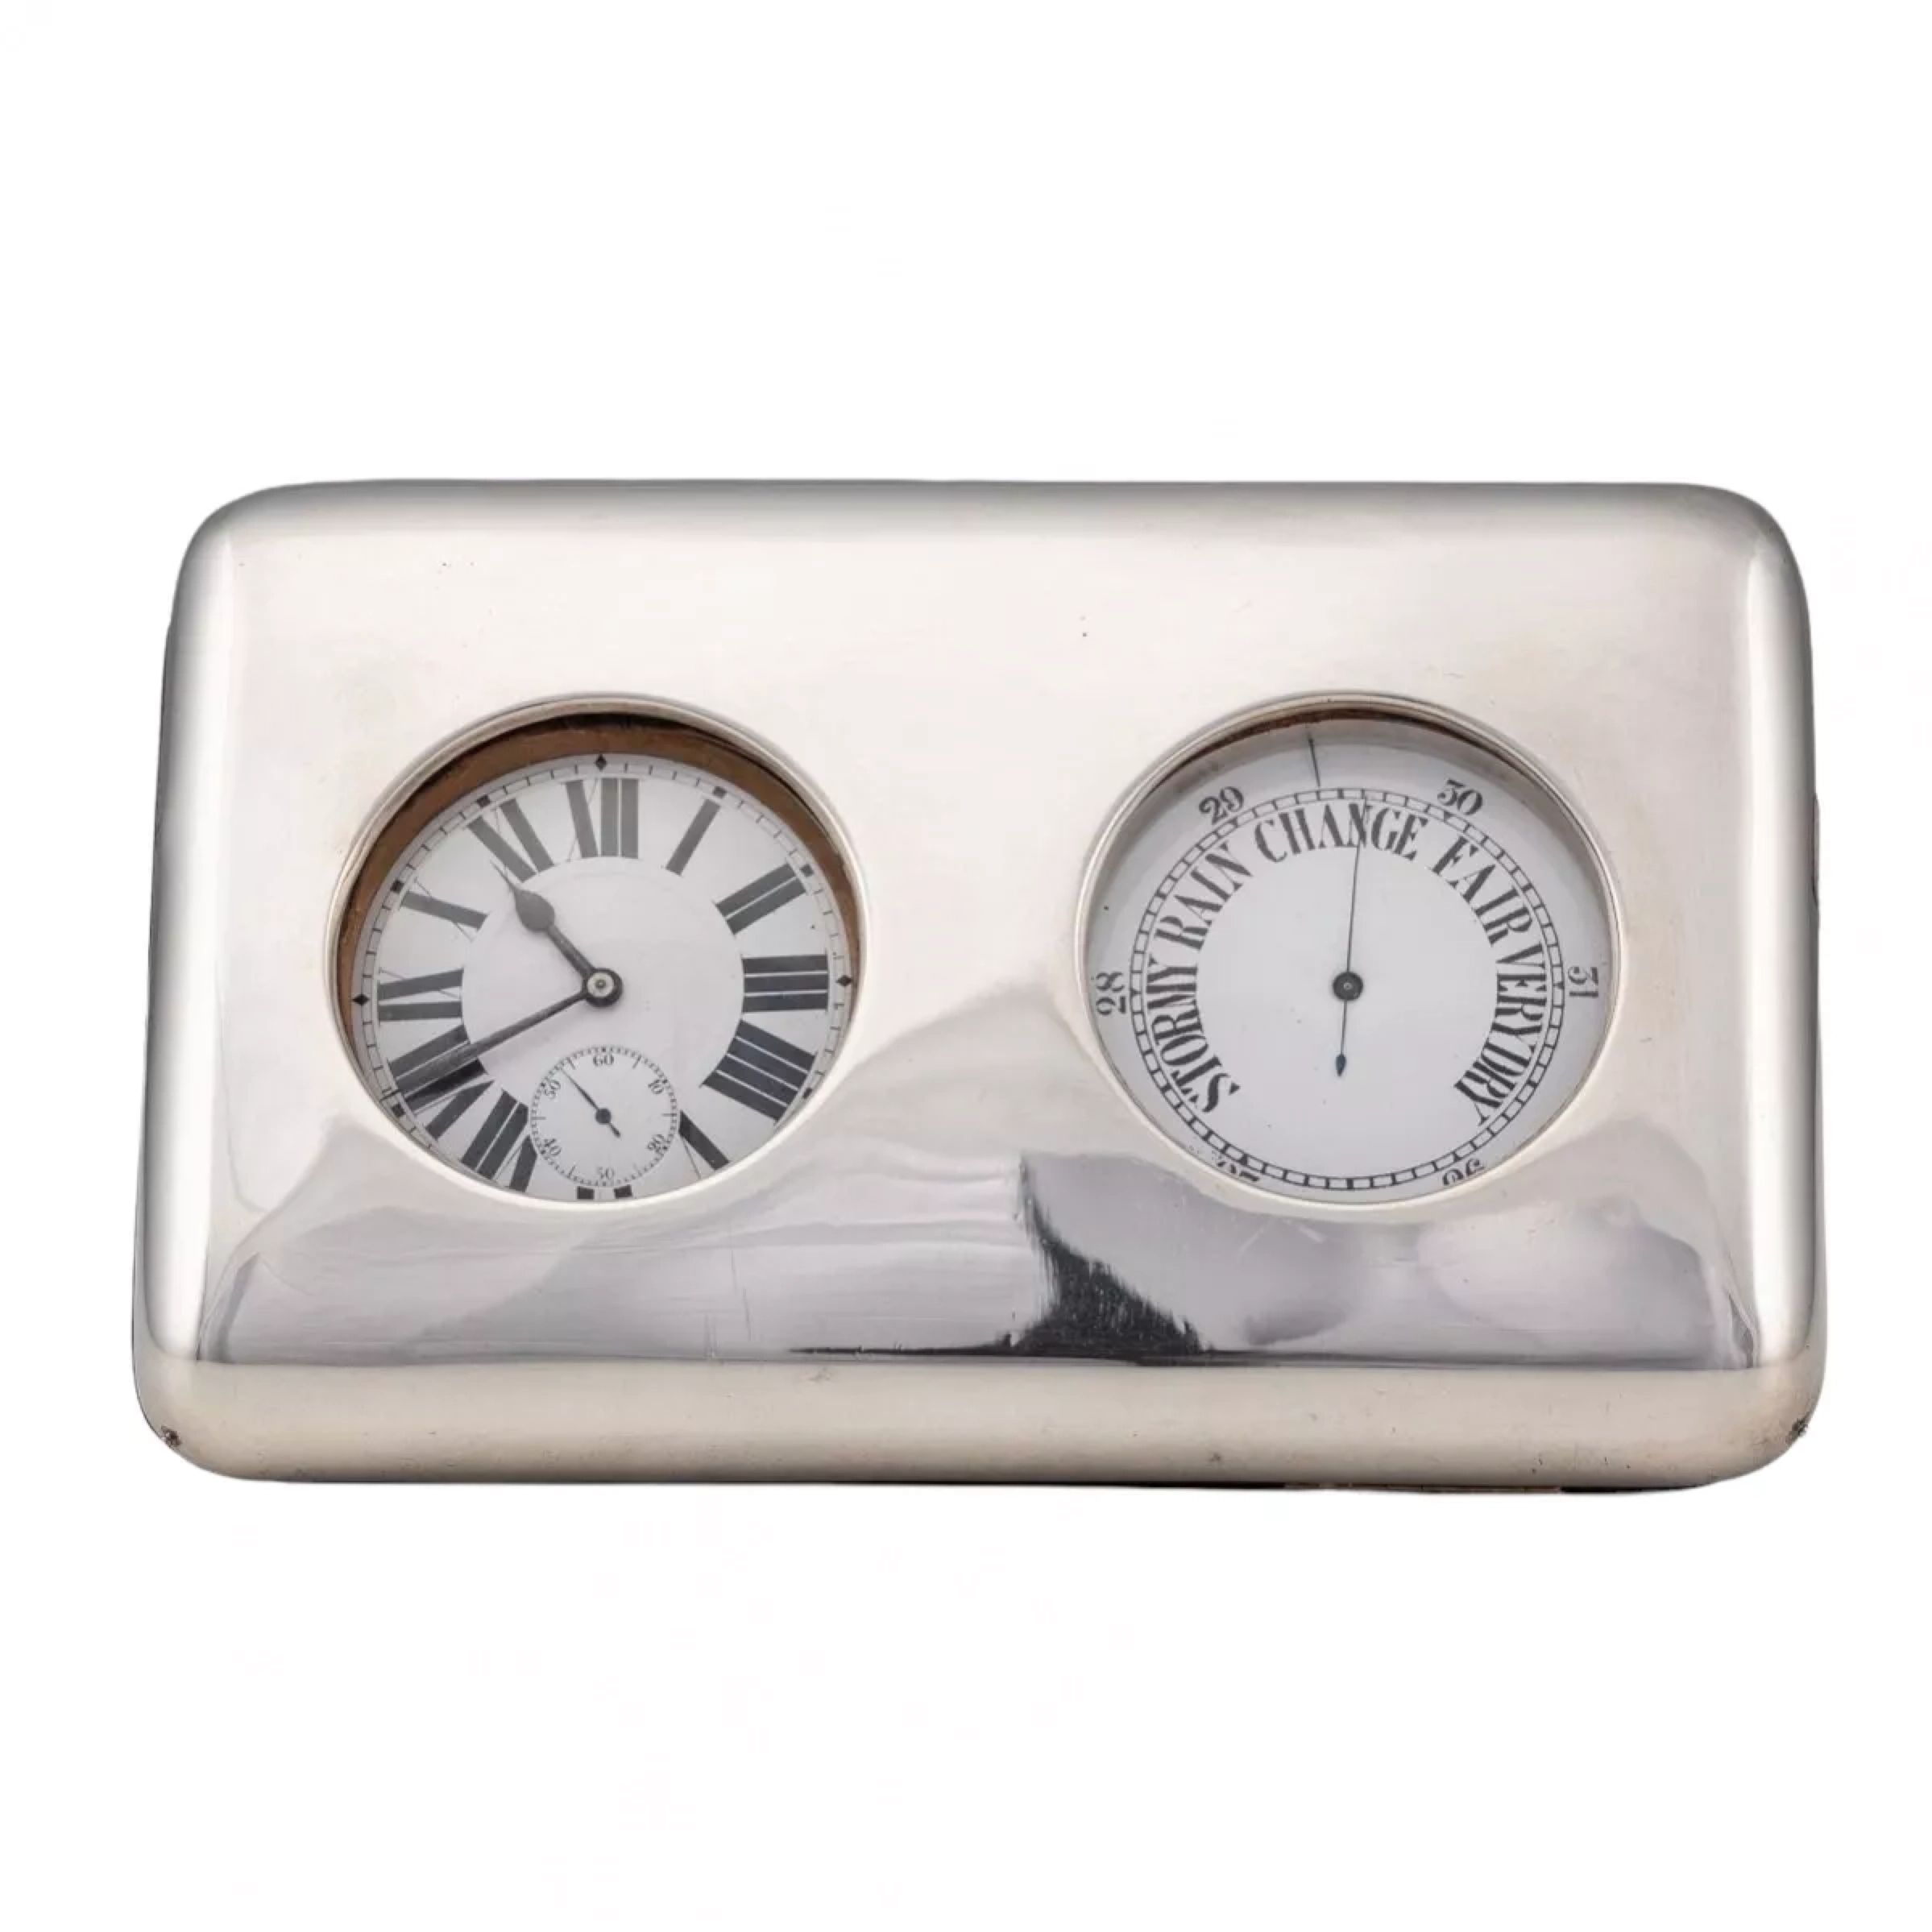 Guillaume-Comyns-Baromètre-et-horloge-avec-support-d&39;horloge-de-bureau-victorien-du-XIXe-siècle-